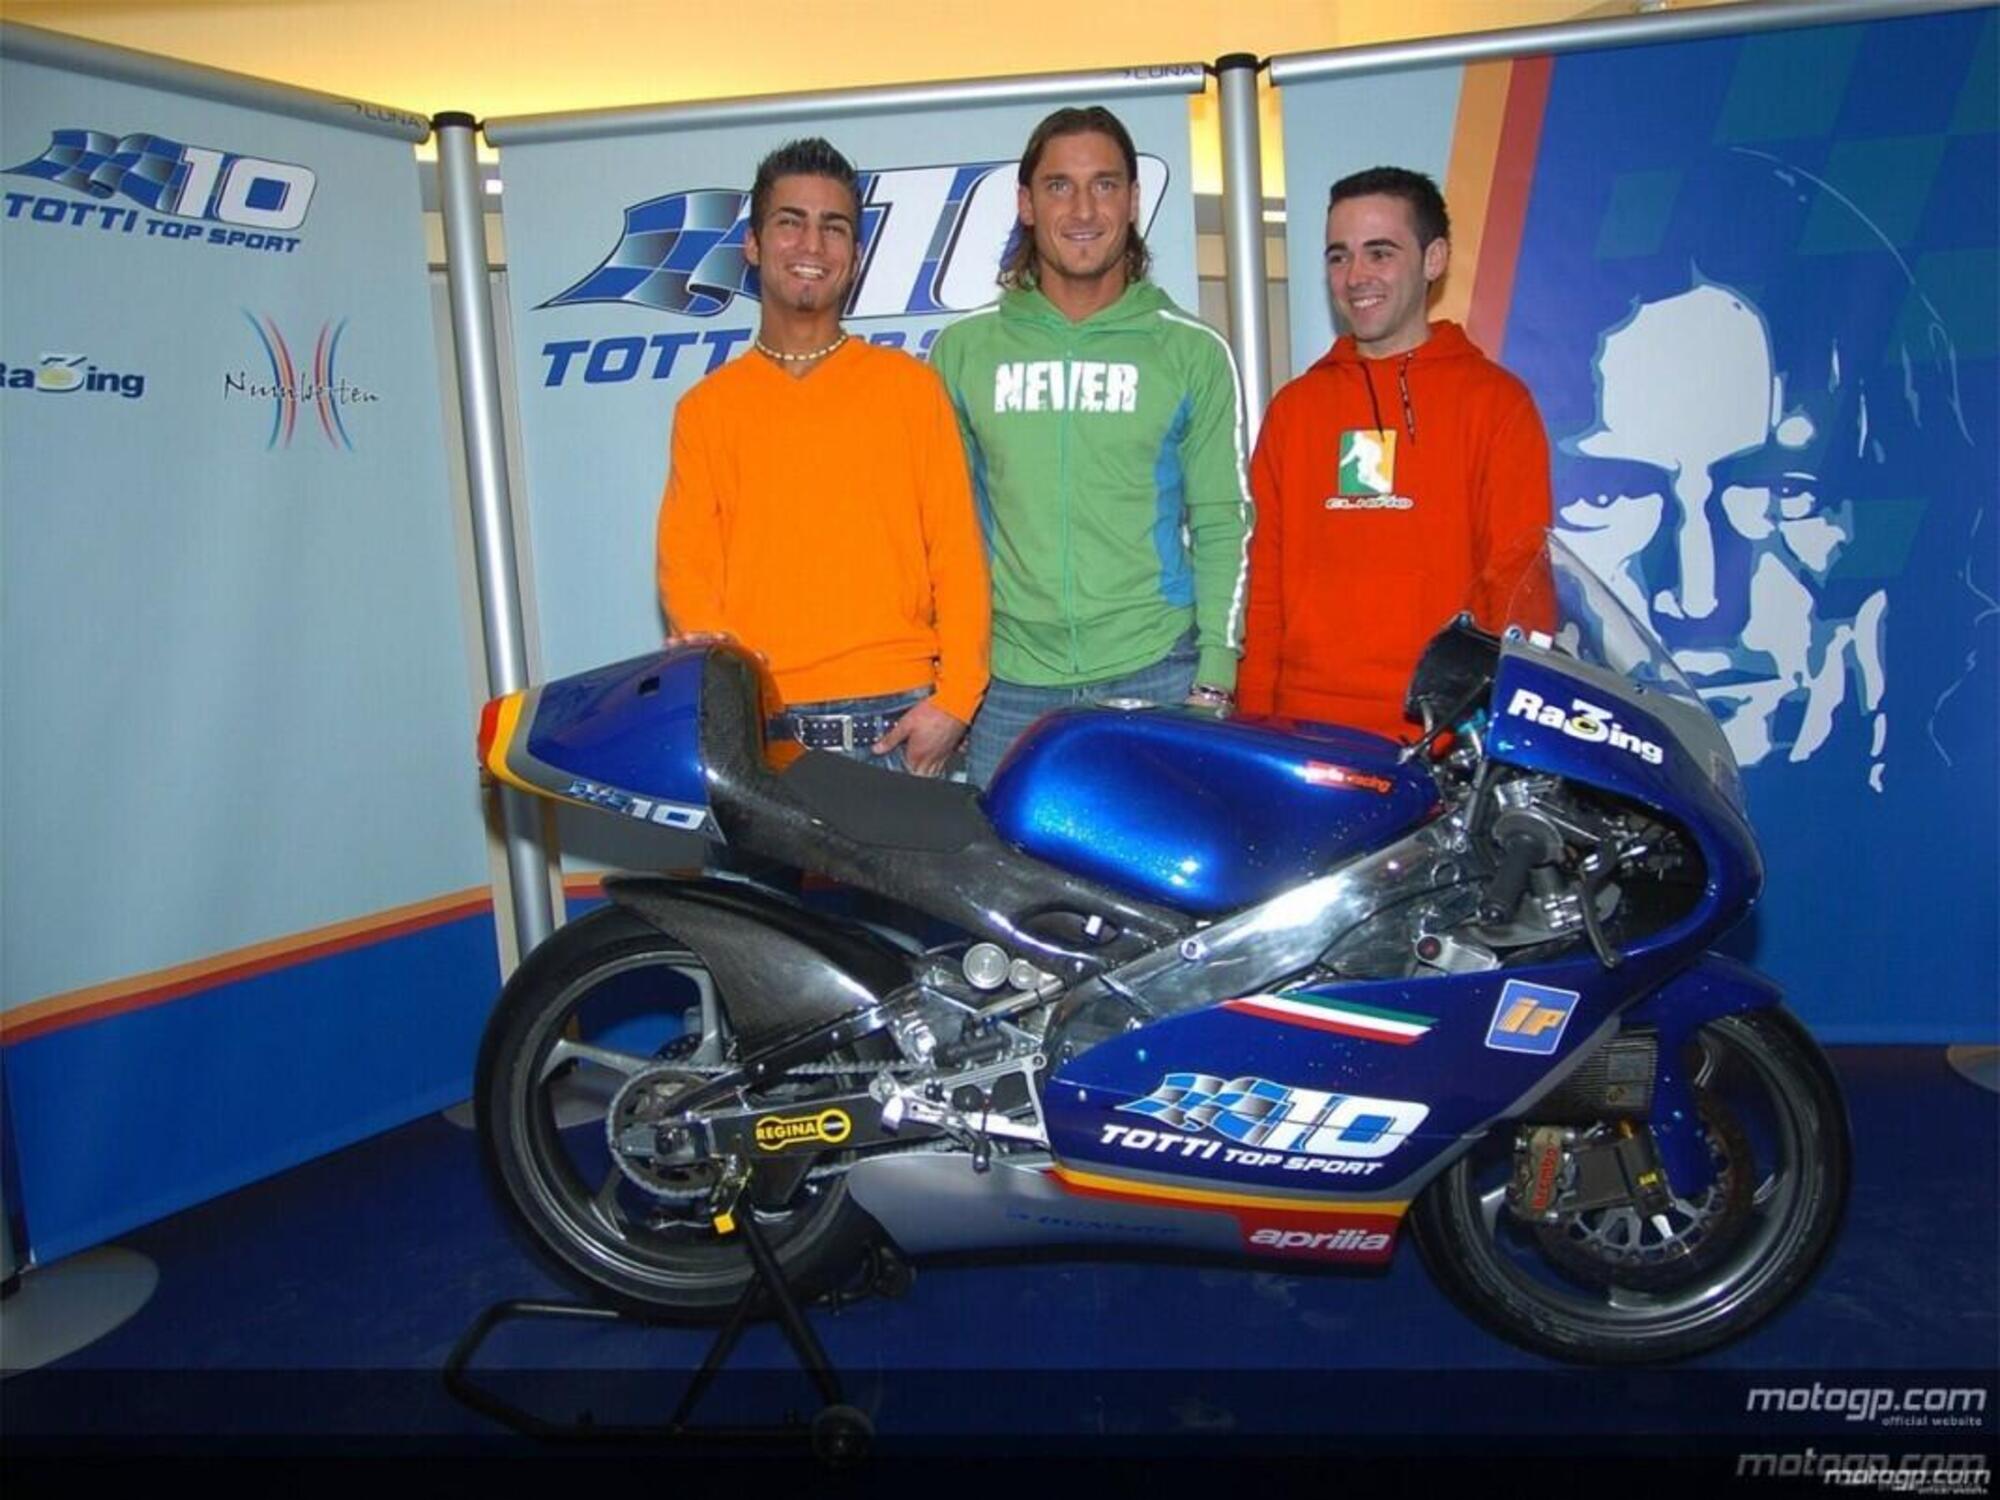 Francesco Totti, Totti Top Sport 2005 con Mattia Pasini